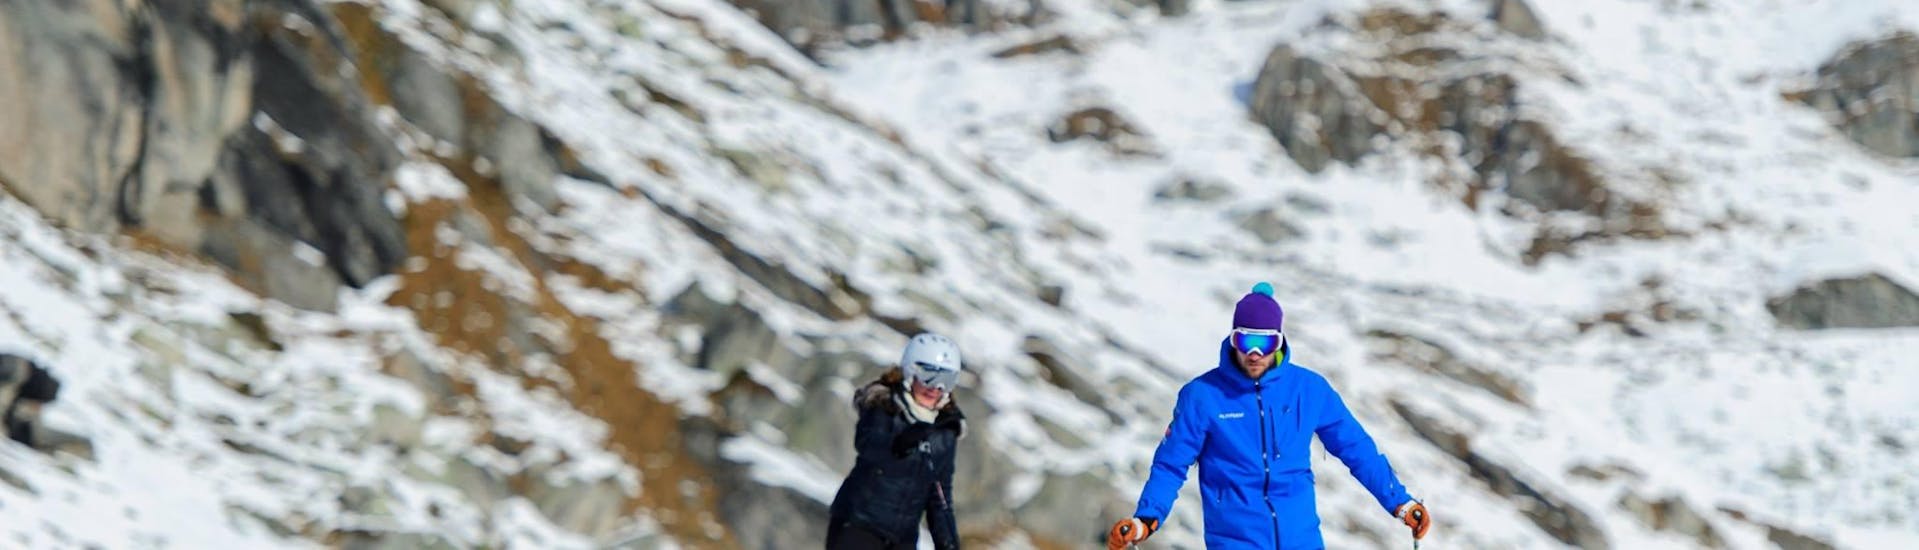 Privé skilessen voor volwassenen van alle niveaus in Gstaad.